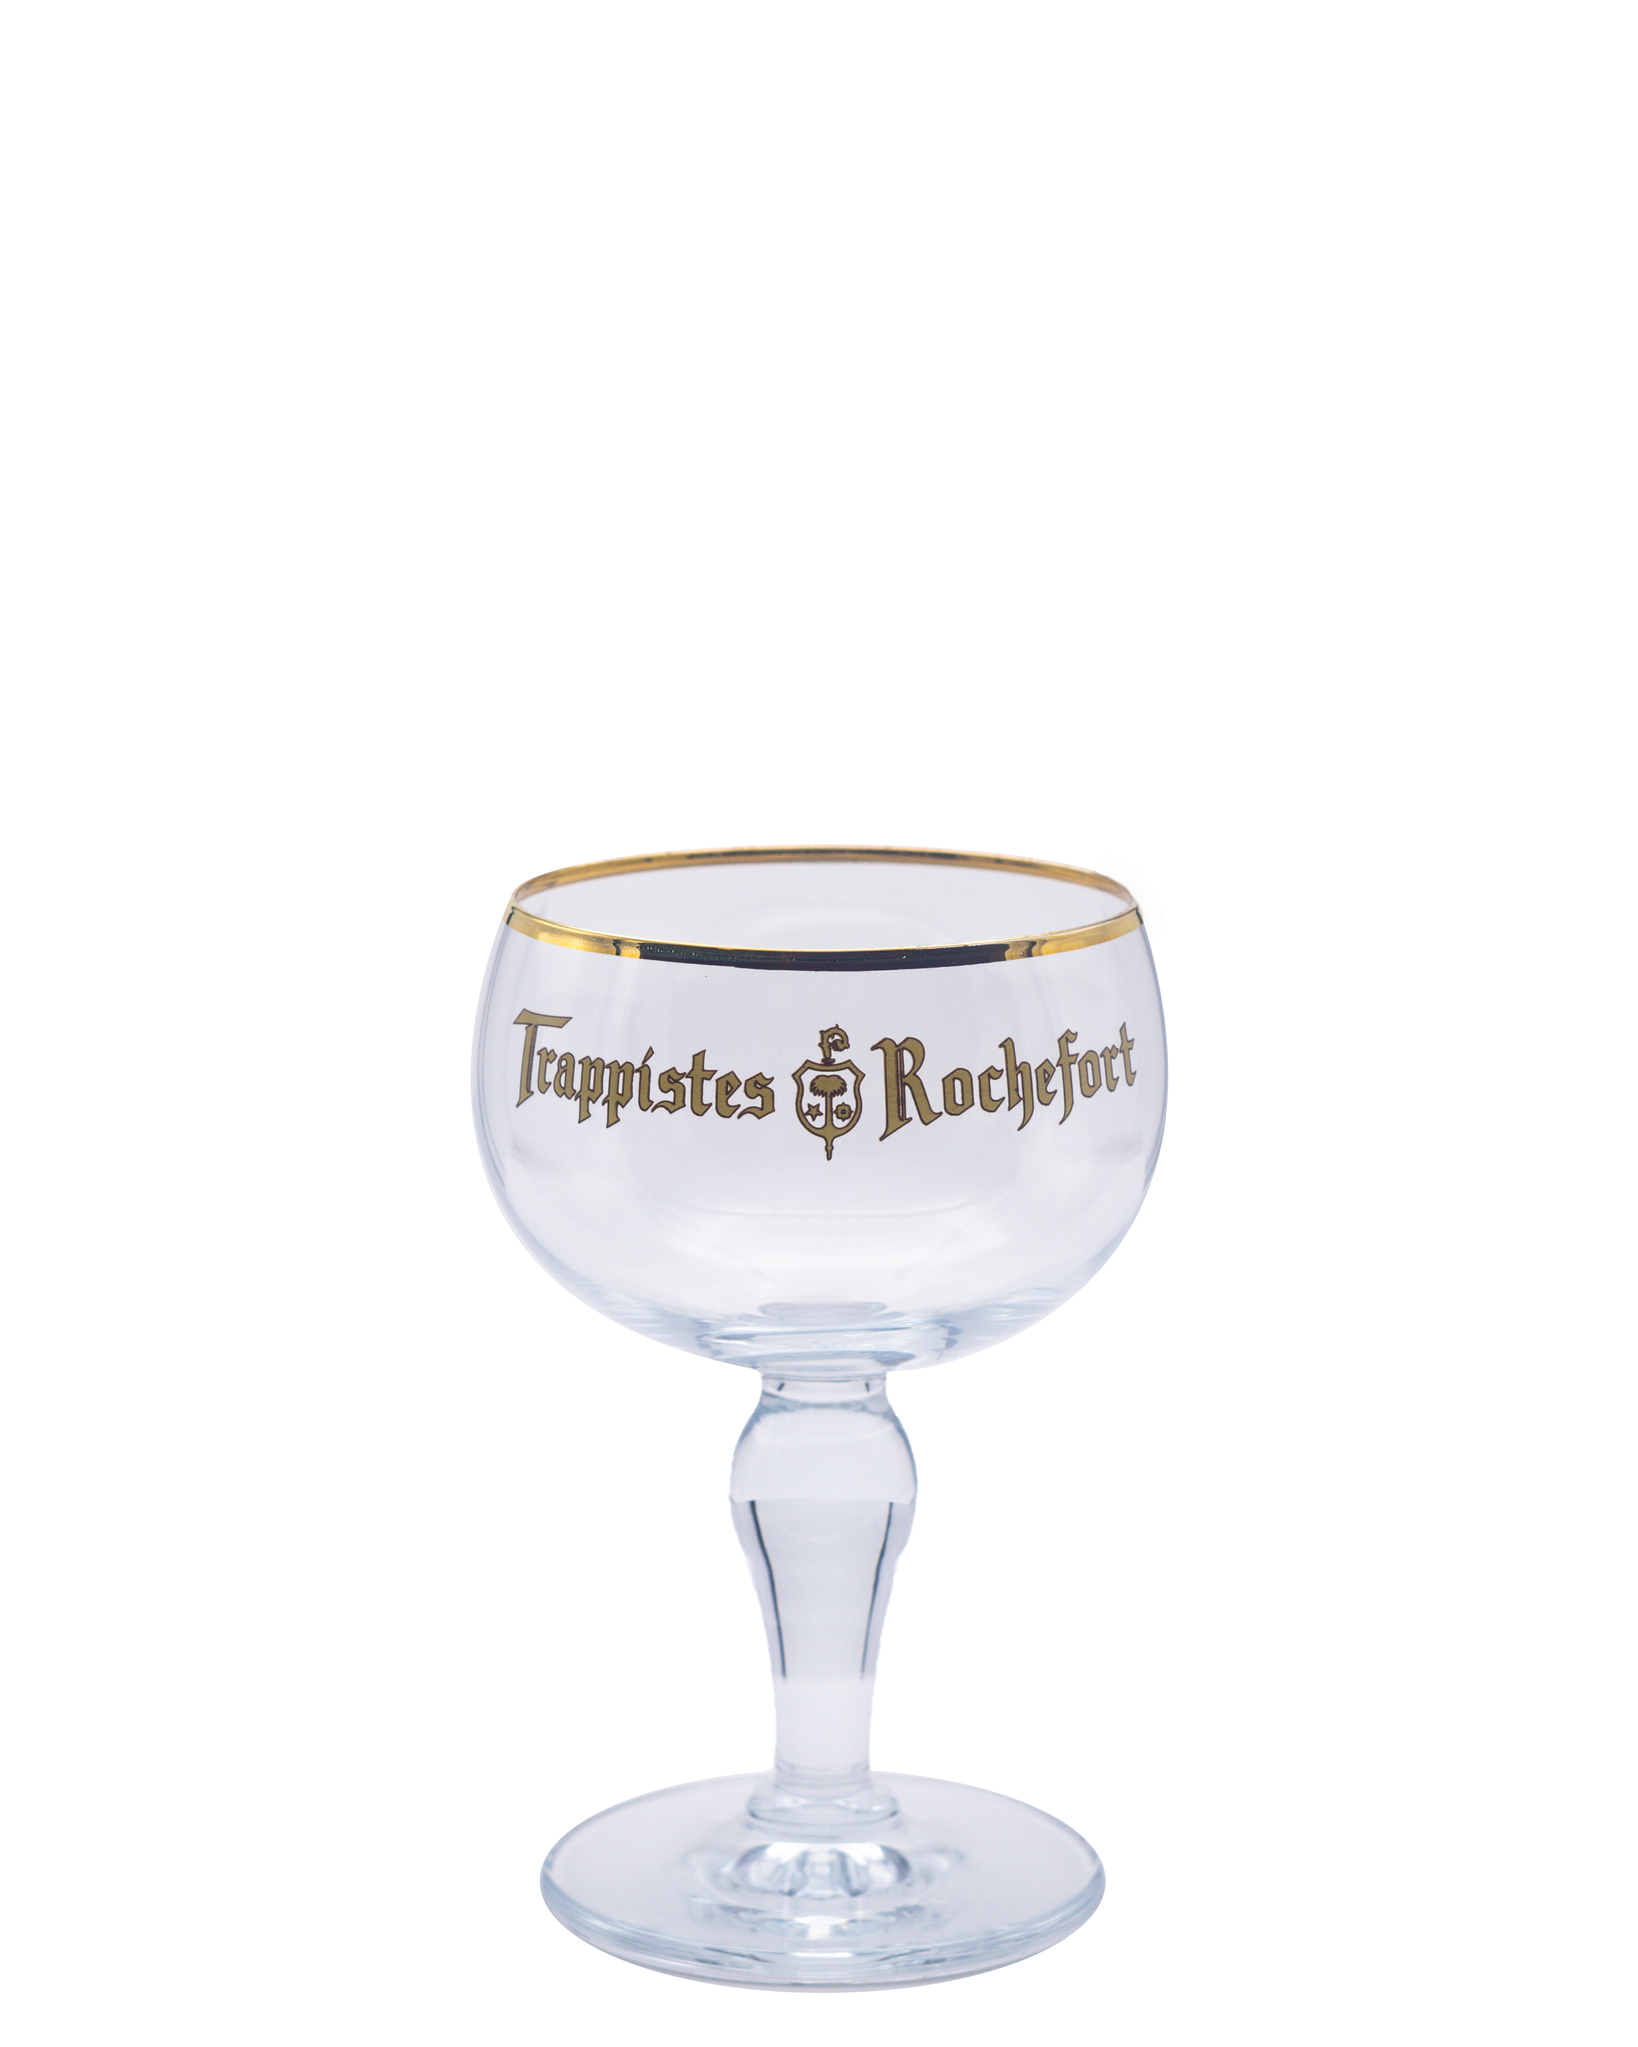 evolutie boog nicotine Trappistes Rochefort Bierglas - 33cl - Online kopen - Belgian Beer Factory